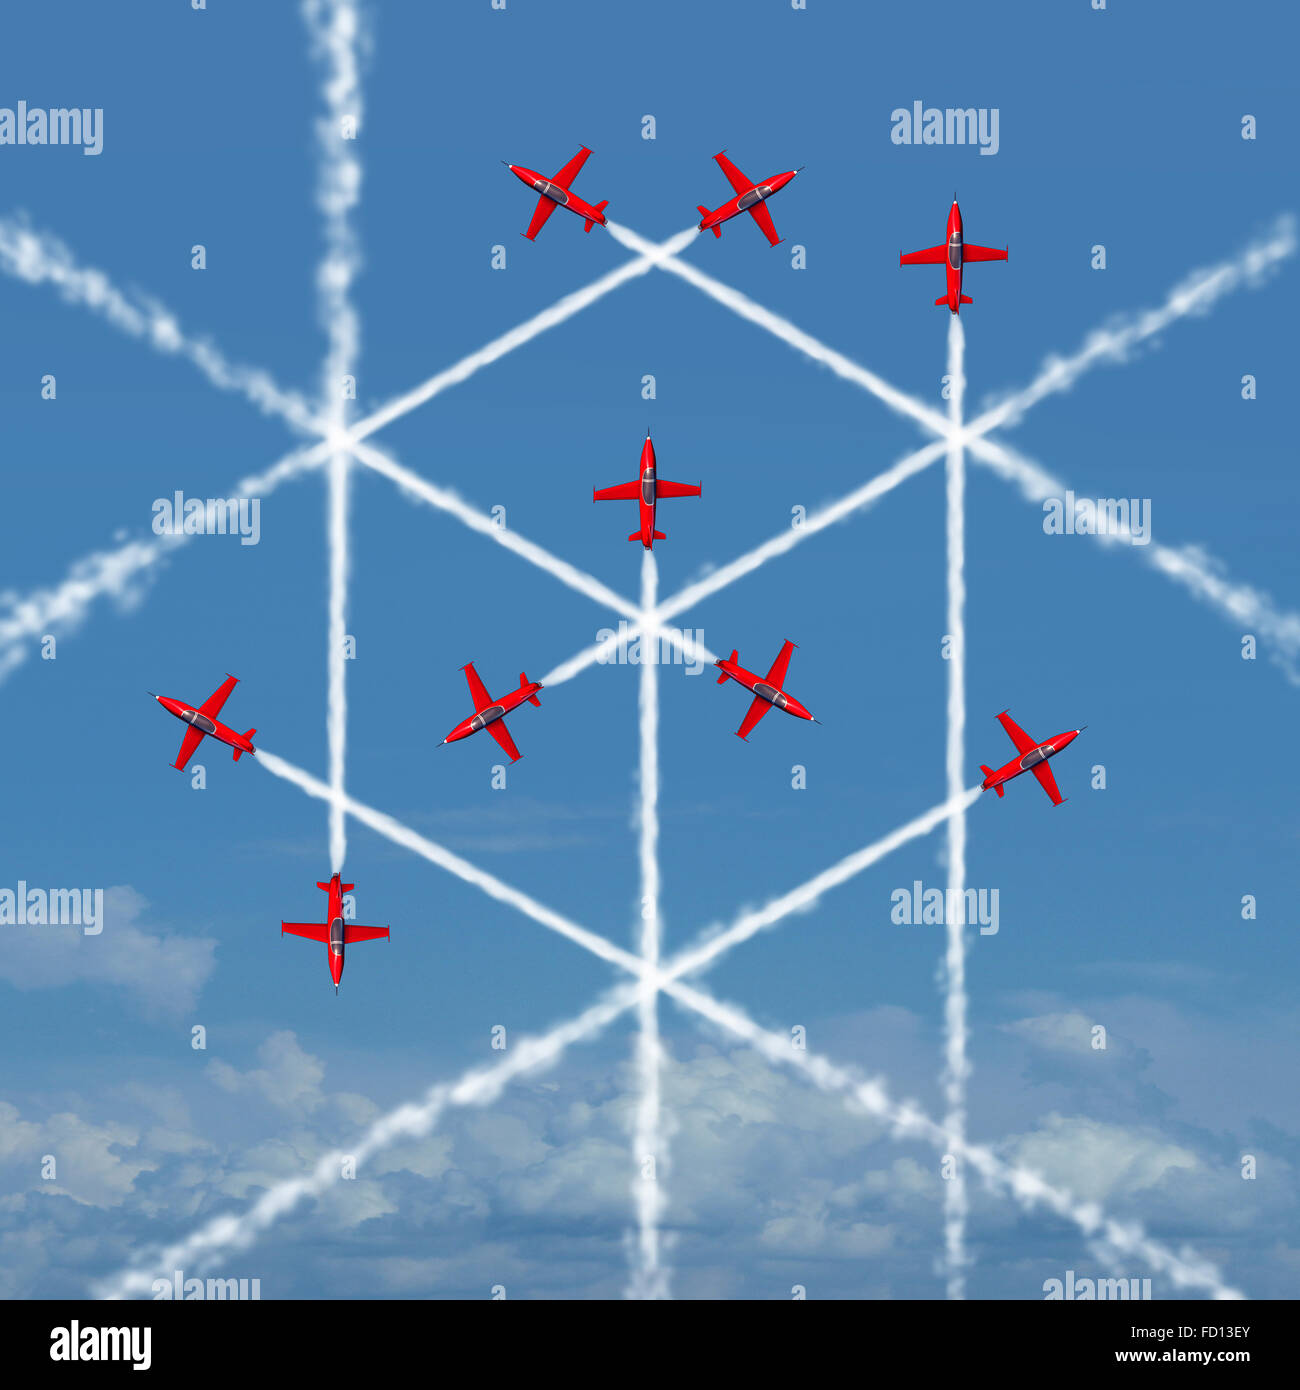 Cube géométrique comme concept abstrait d'une forme carrée en trois dimensions créé par la traînée de fumée de voler des avions à réaction comme un symbole pour la géométrie ou de l'équipe organiser et travailler ensemble pour réussir. Banque D'Images